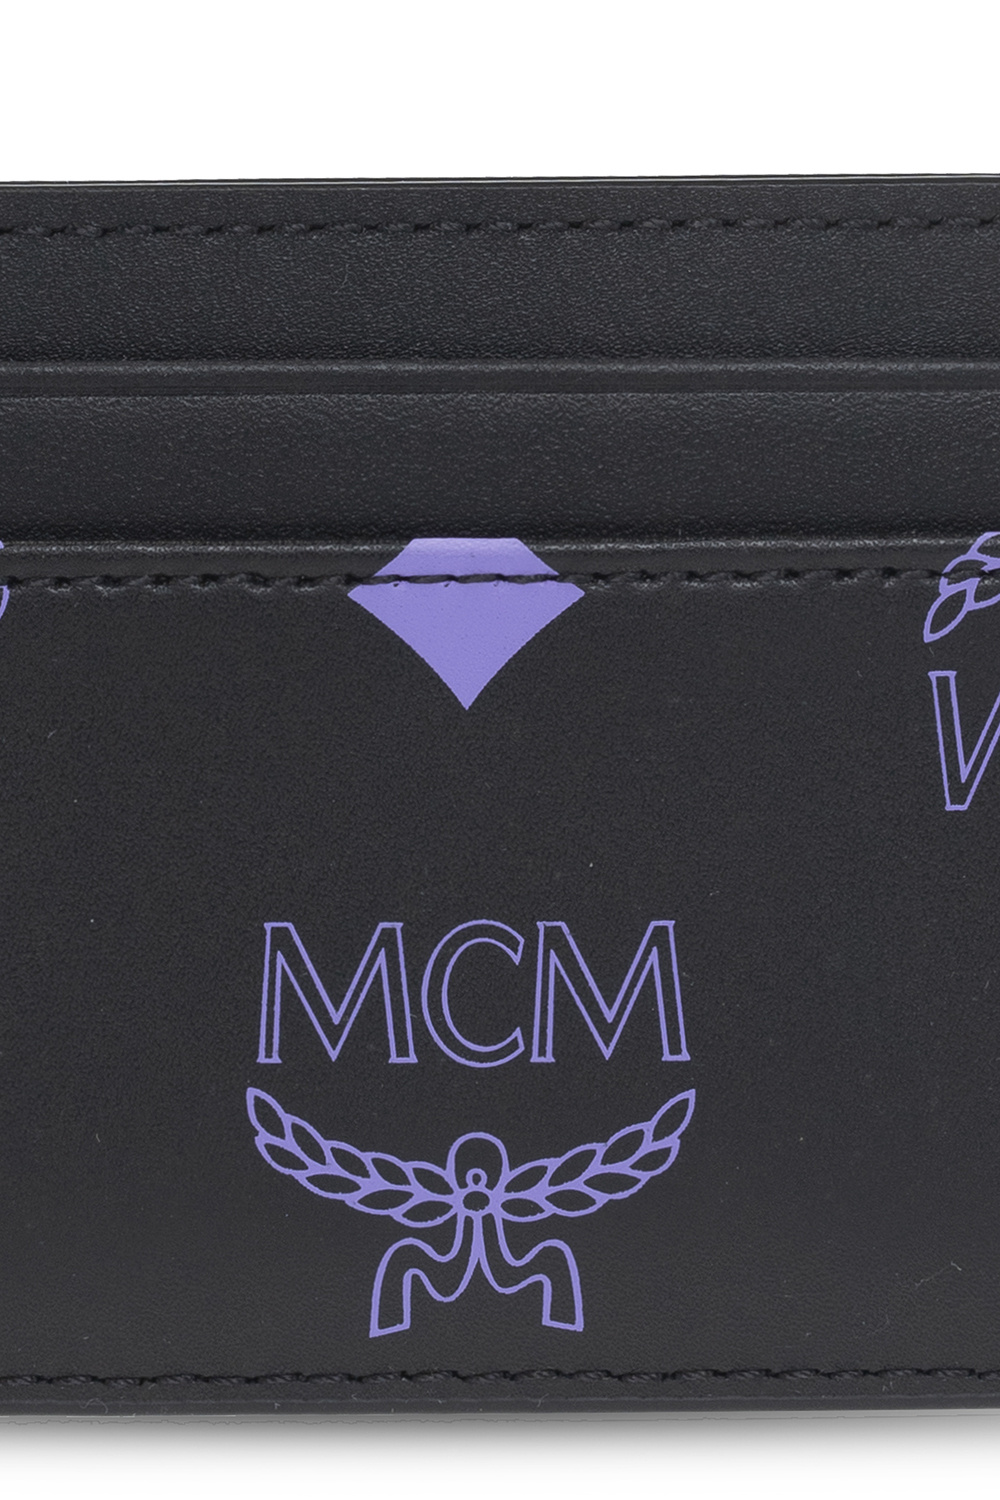 MCM Wallets & Cardholders for Men